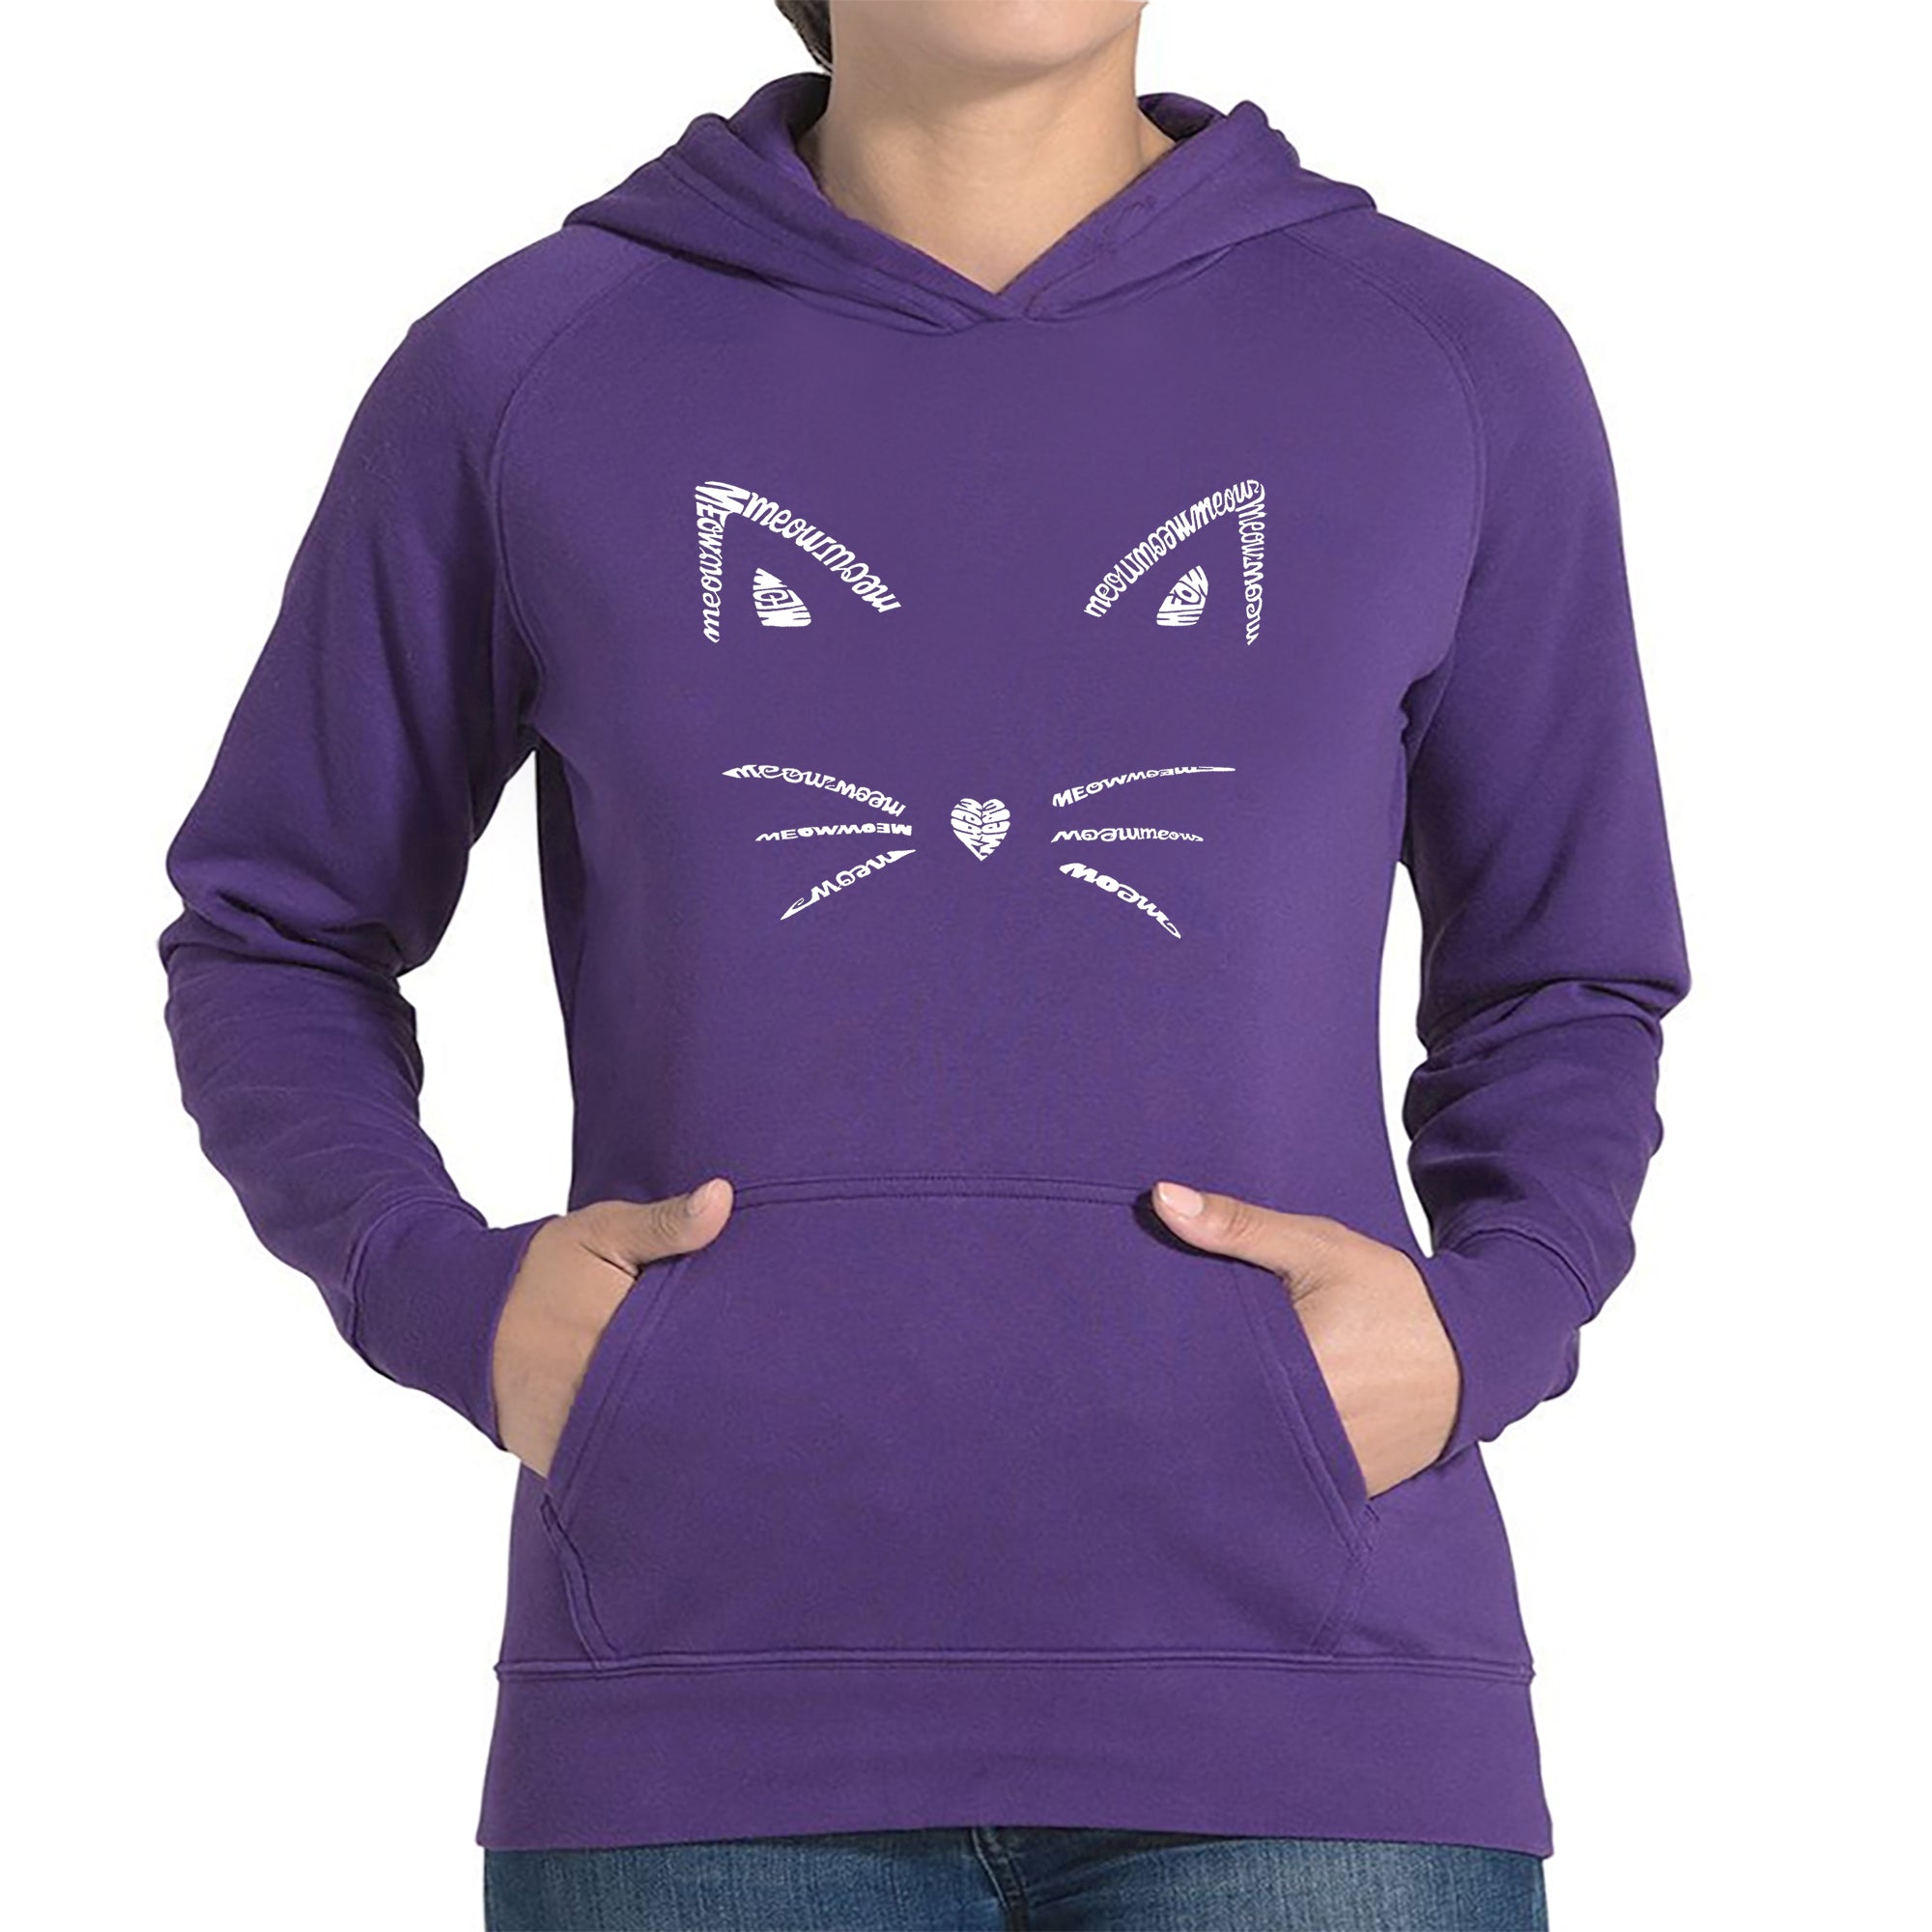 Whiskers - Women's Word Art Hooded Sweatshirt - Purple - Small